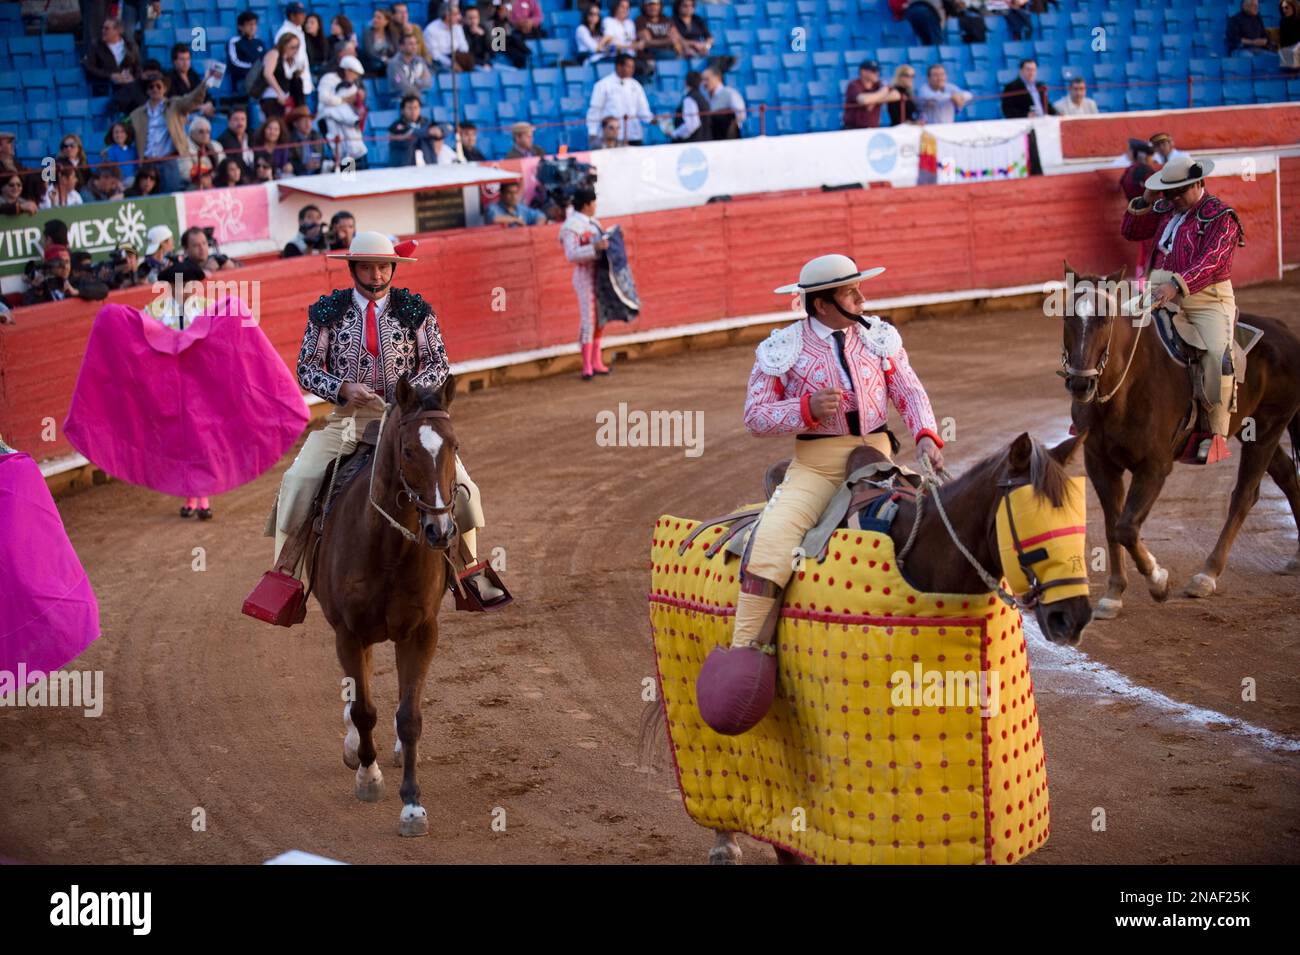 Lors d'une corrida à Mexico, des toreros défilent sur le ring ; Mexico, Mexique Banque D'Images